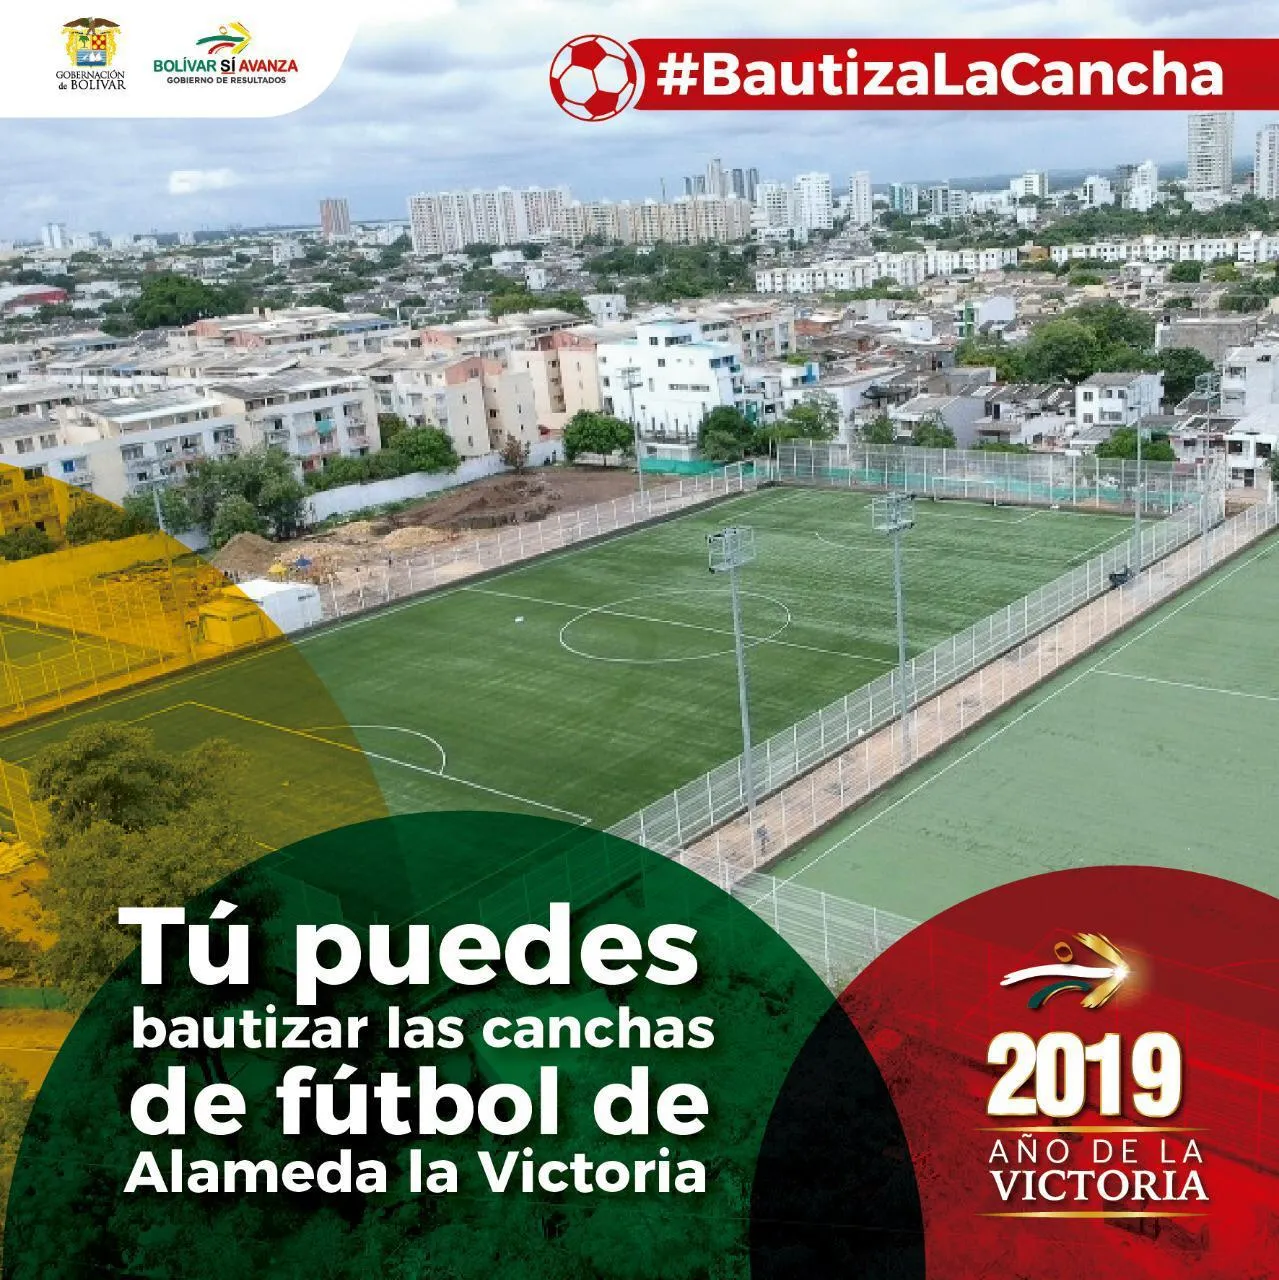 Se abre votación para bautizar cancha de fútbol 7 de Alameda La Victoria -  EL BOLIVARENSE